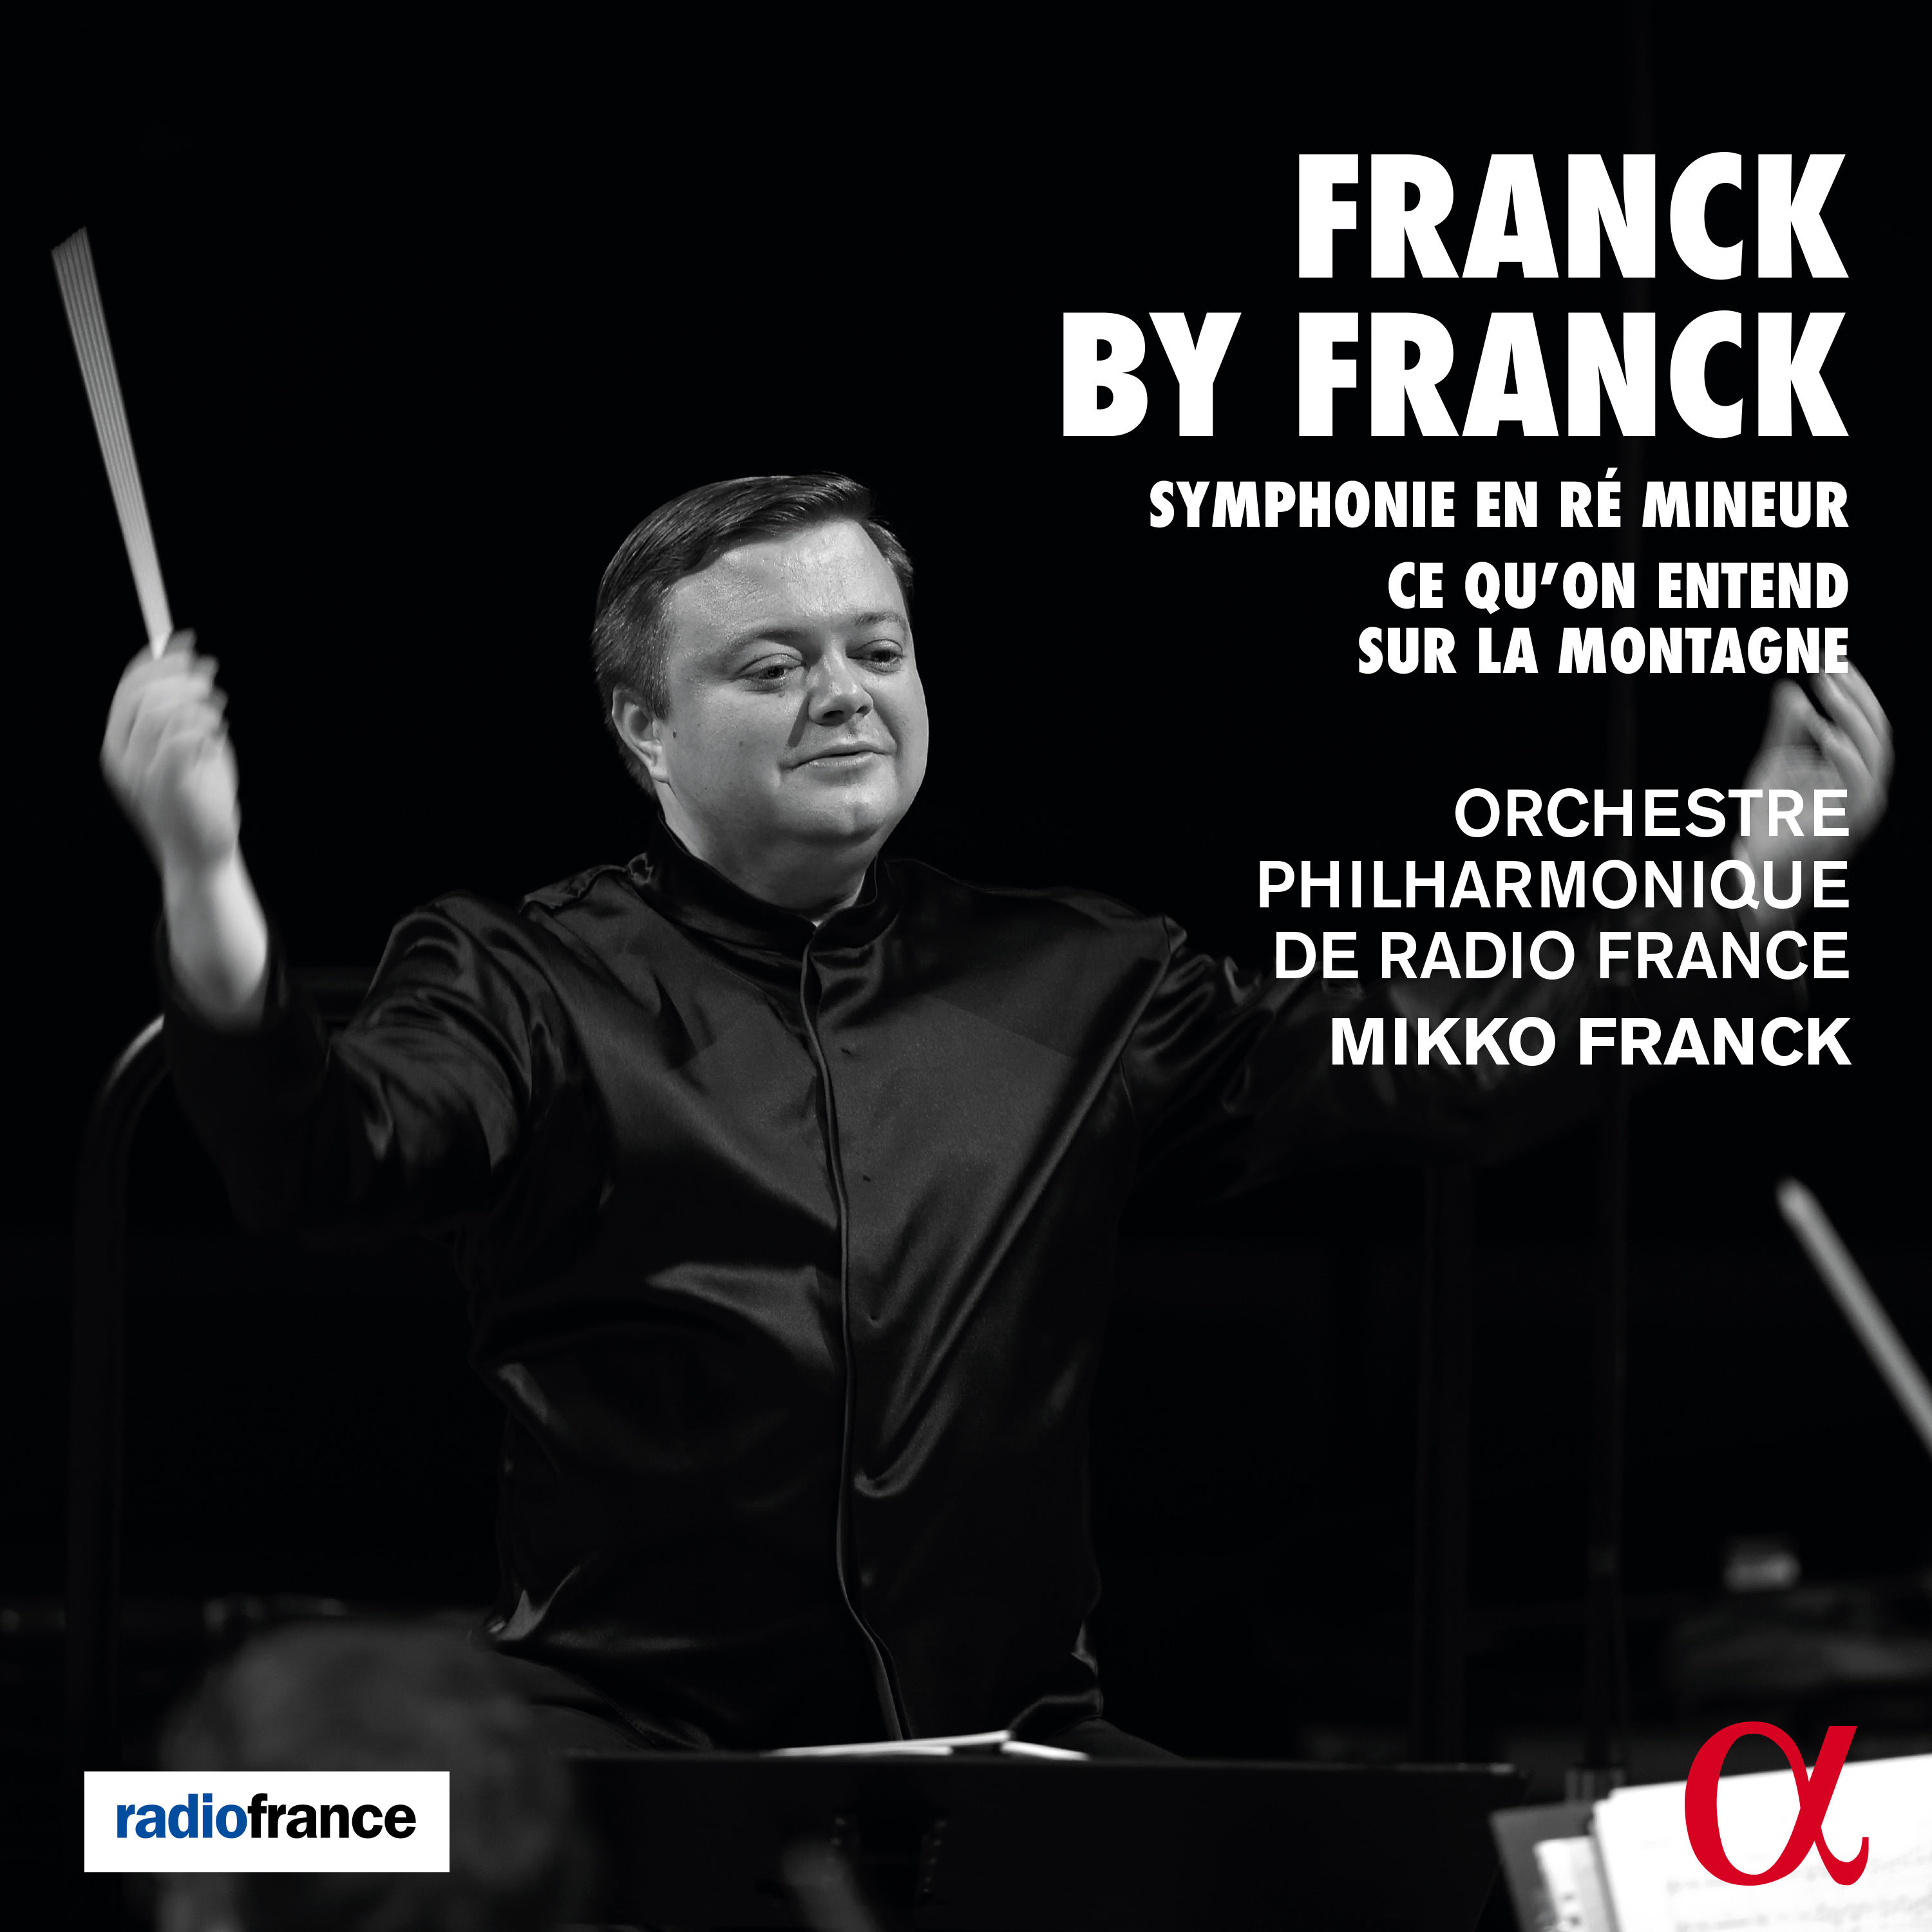 Orchestre Philharmonique de Radio France - Franck by Franck (2020) [FLAC 24bit/48kHz]